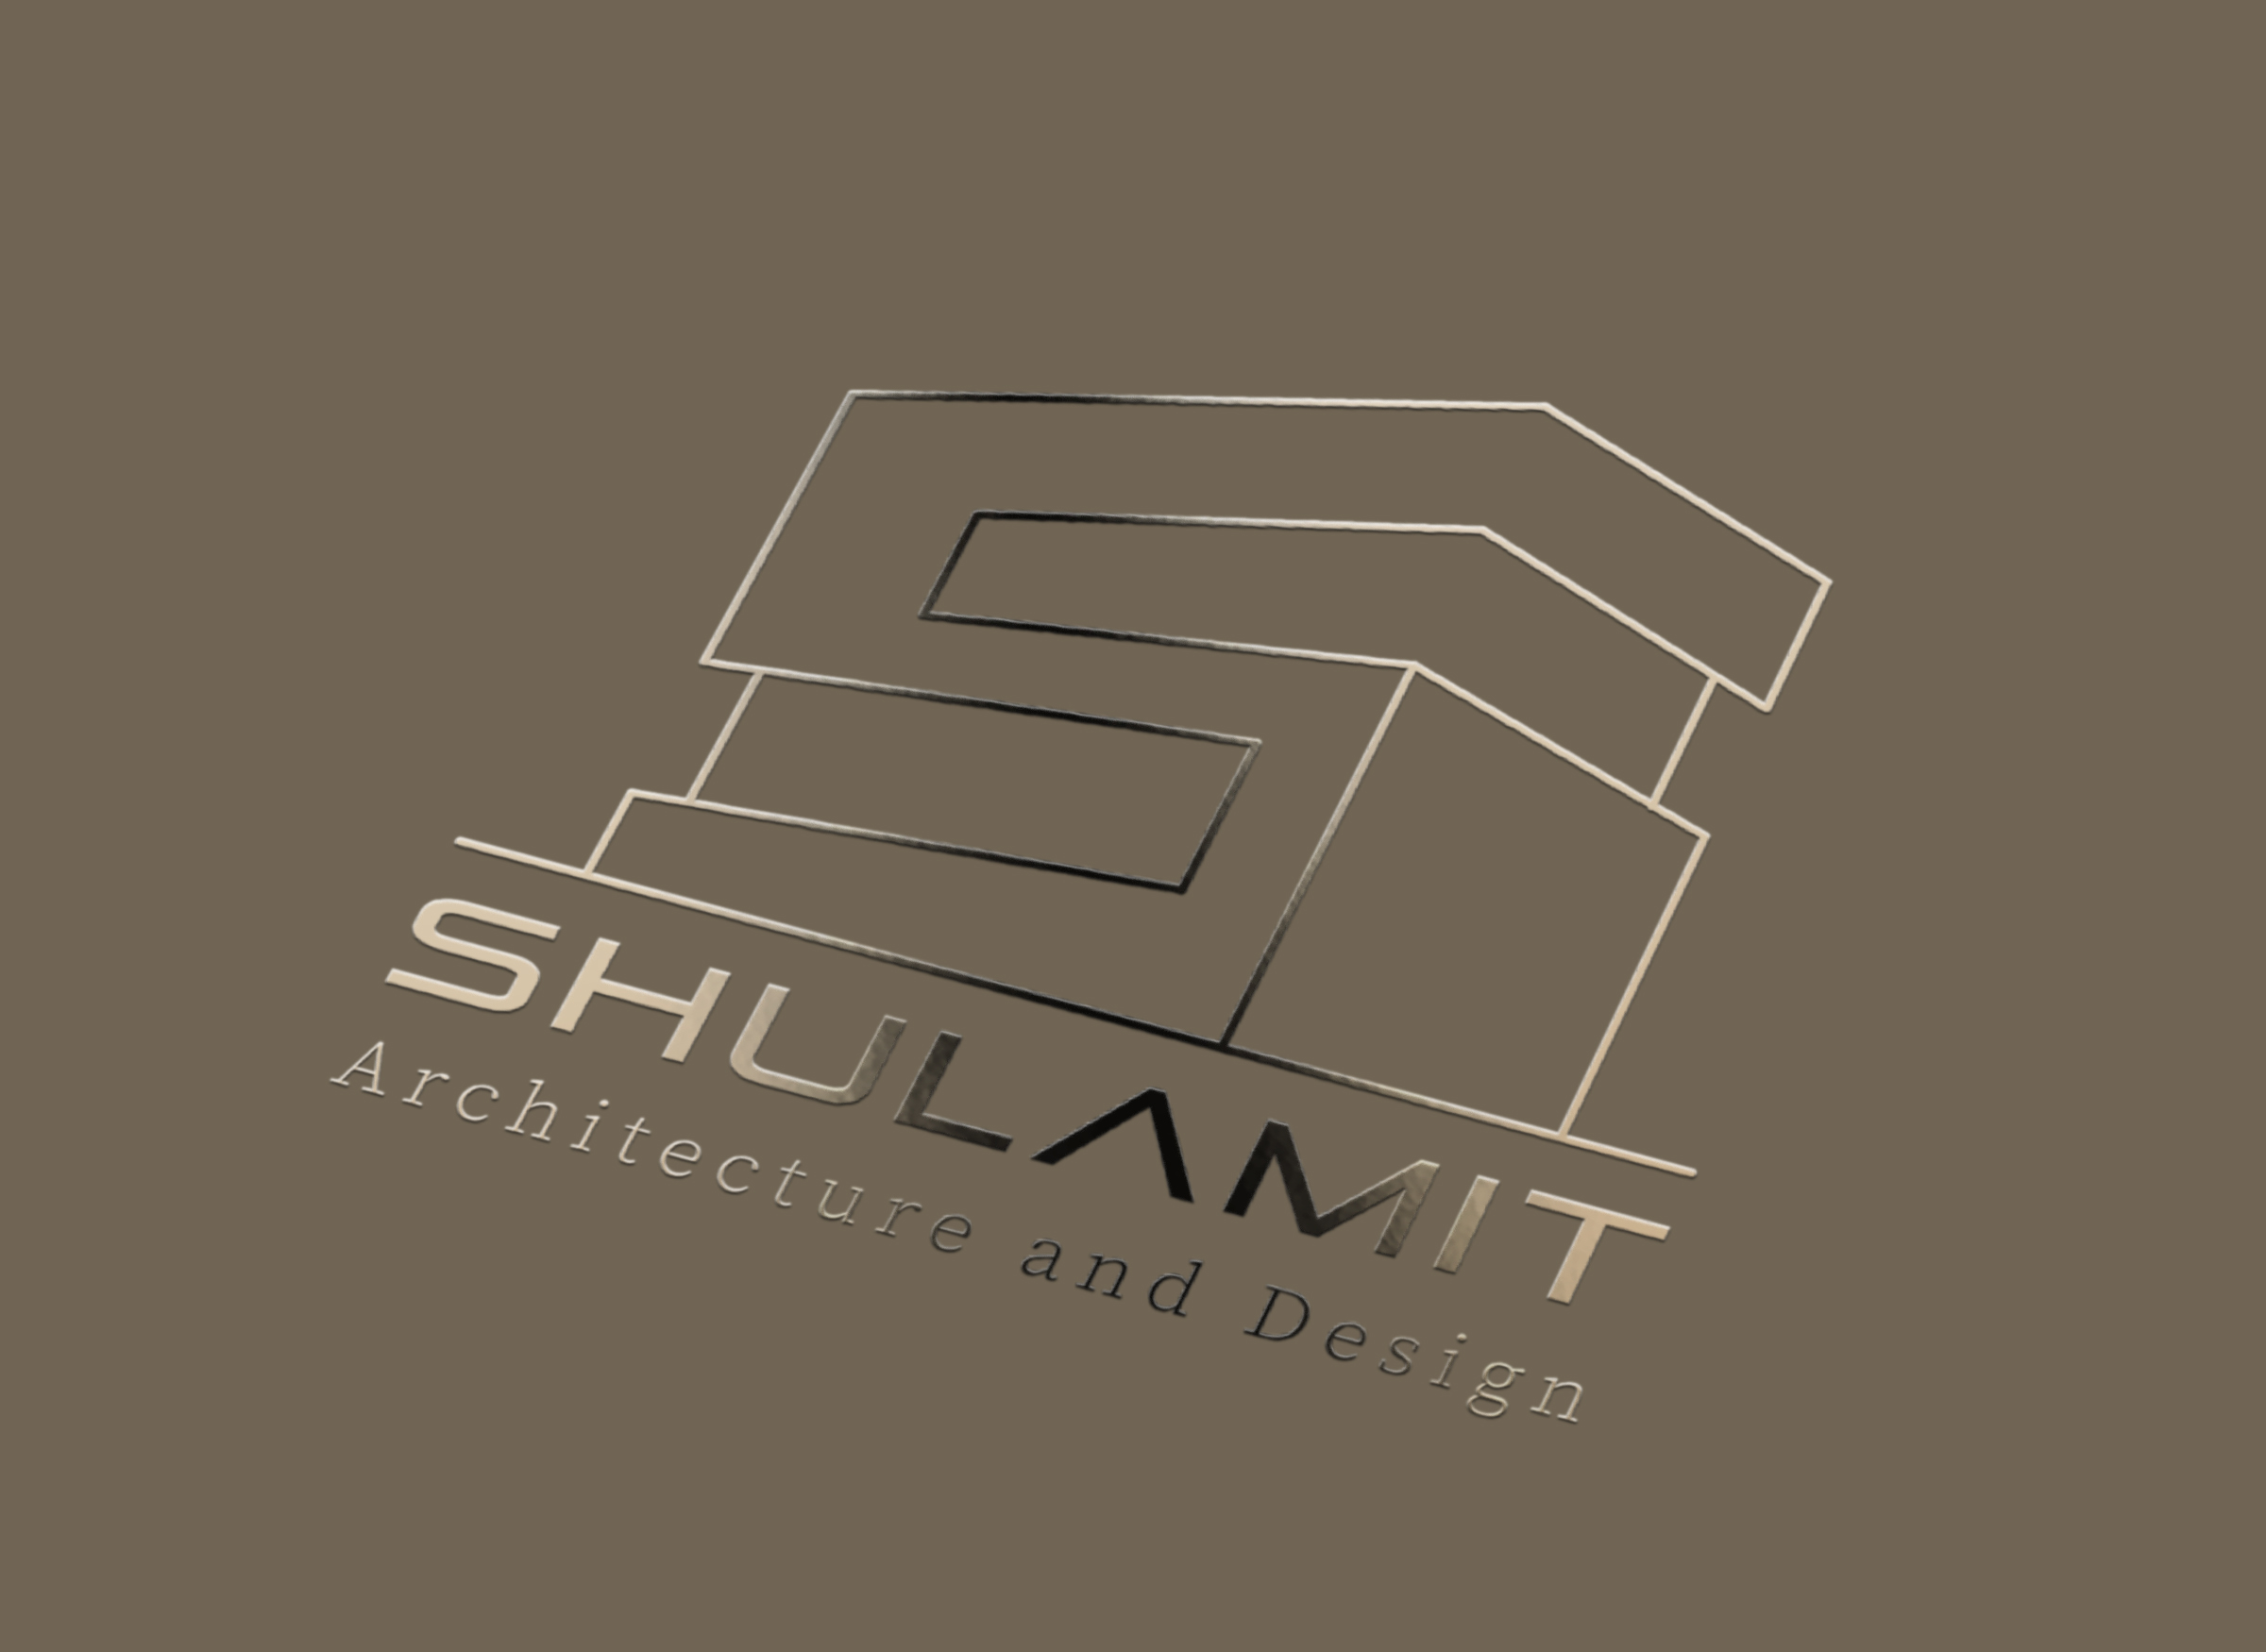 שולמית - אדריכלית - לוגו